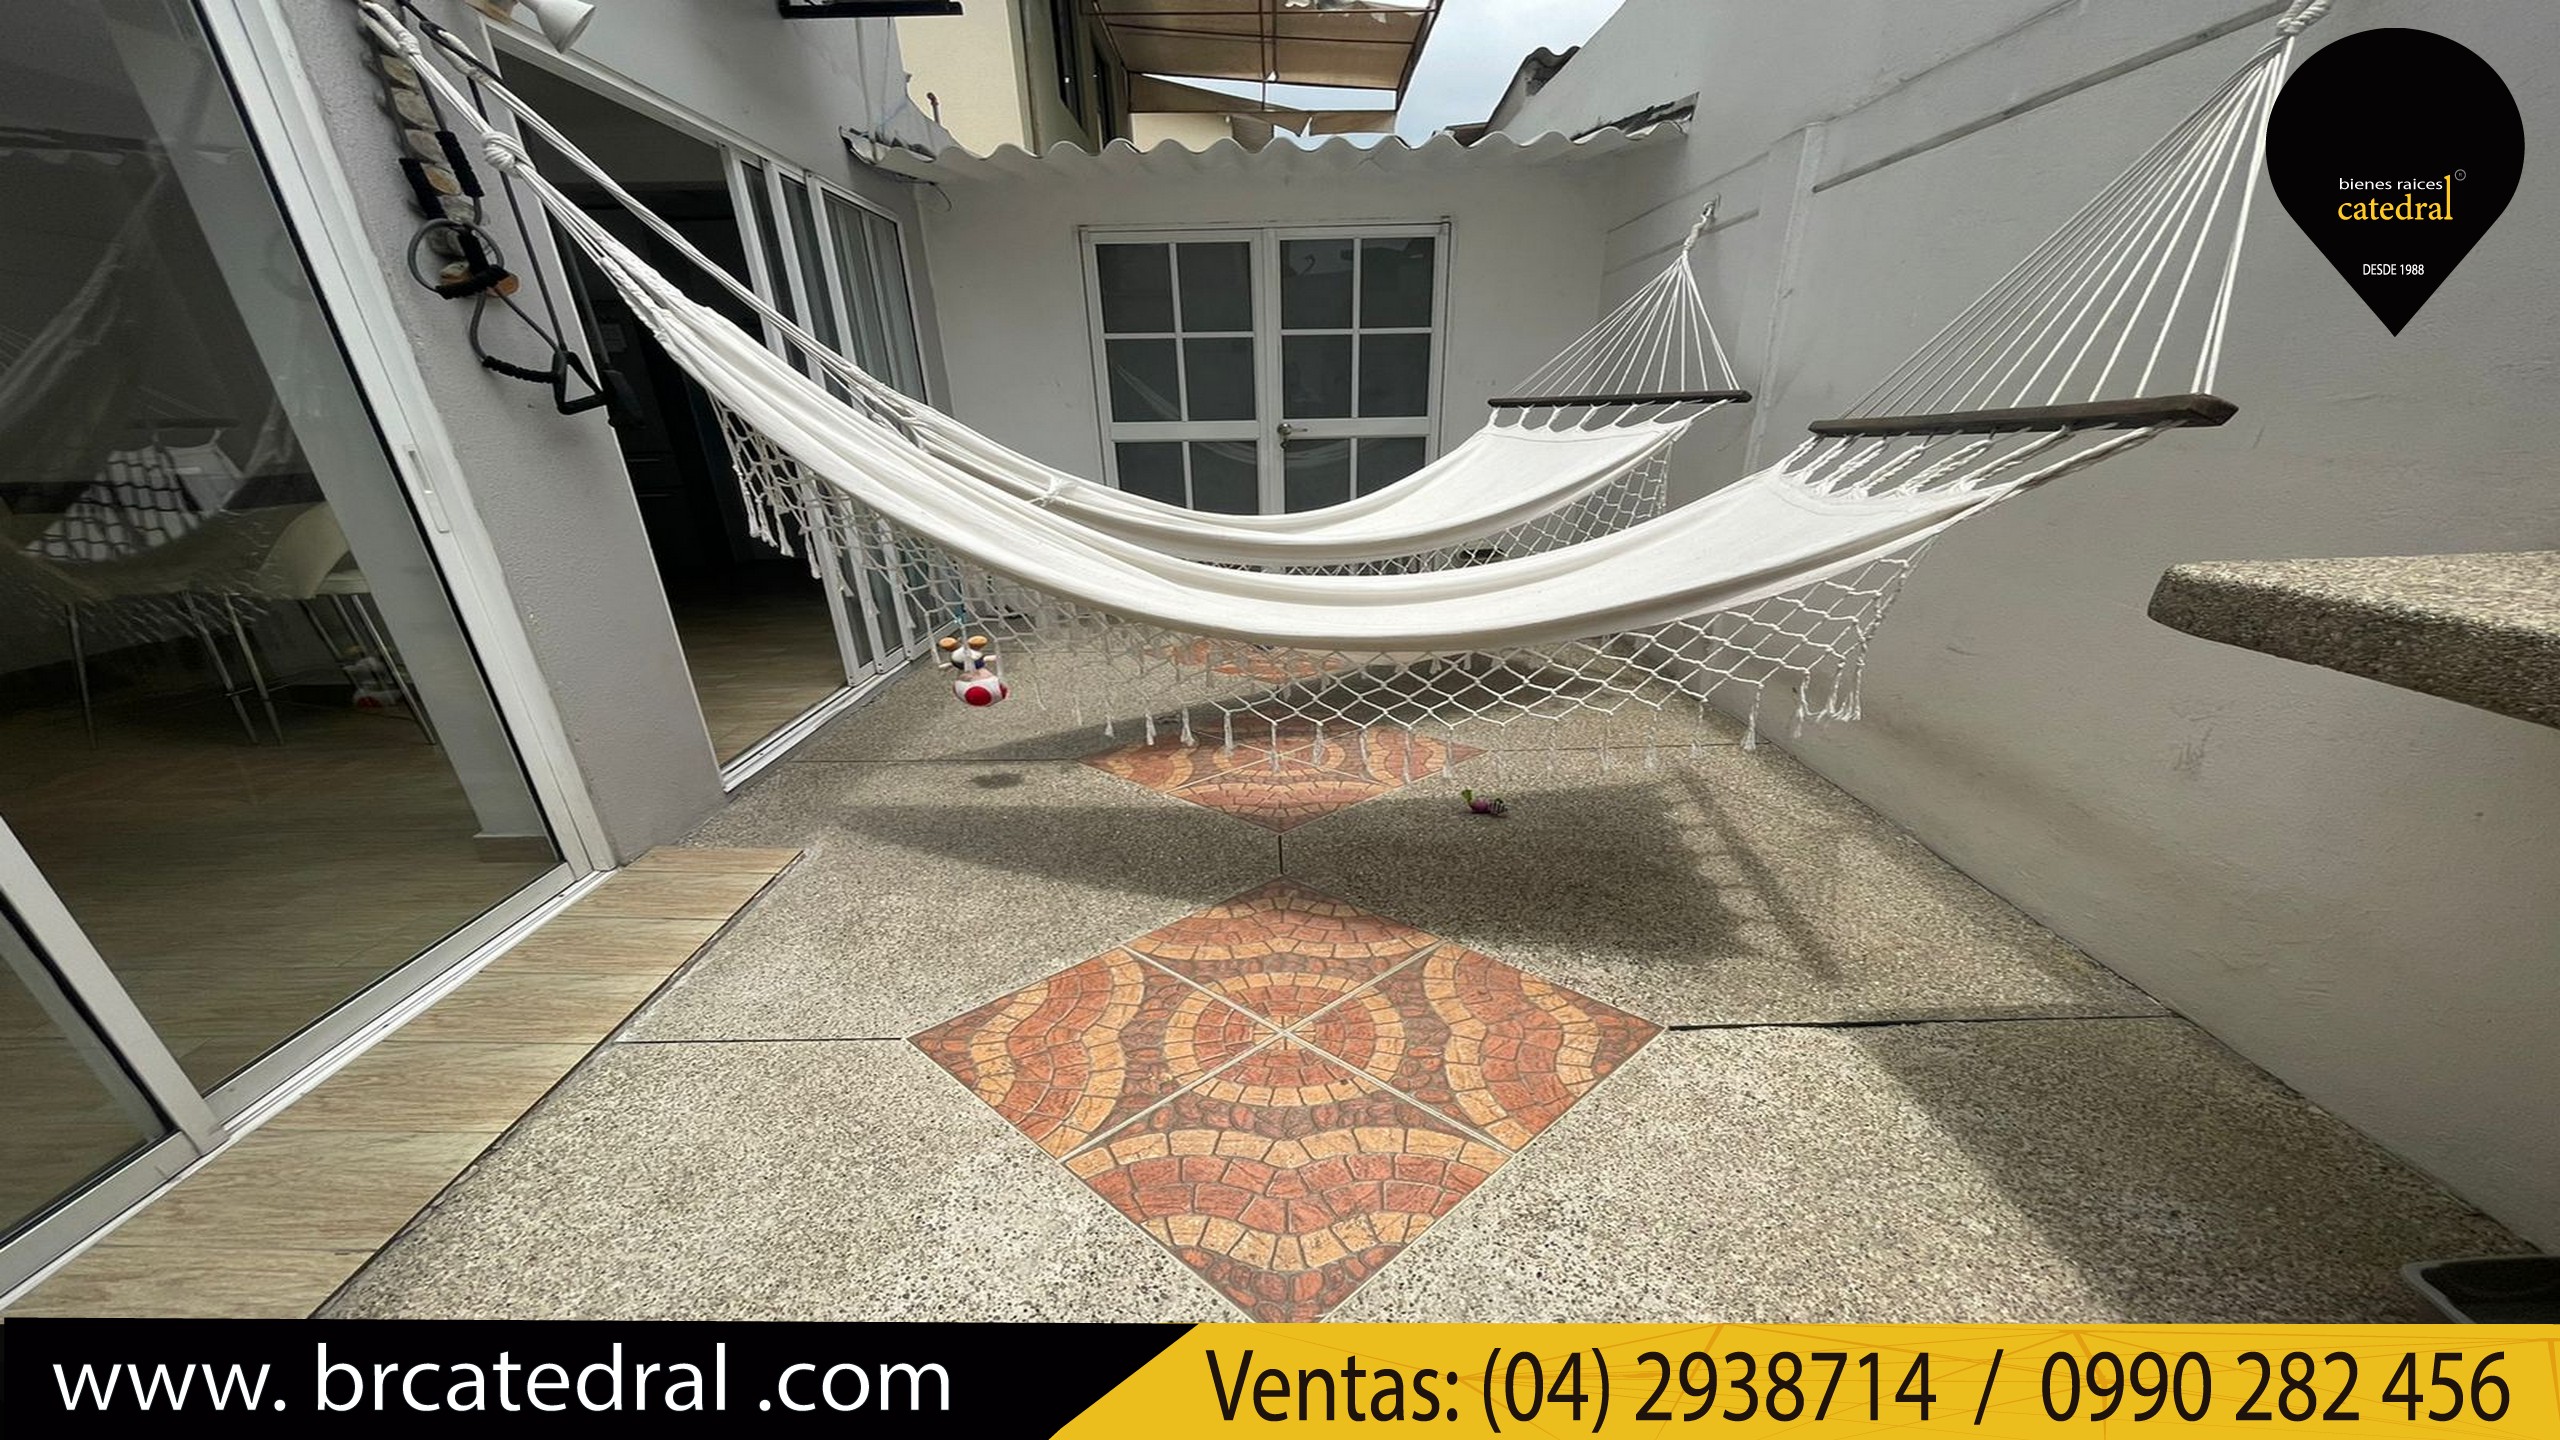 Villa Casa de Venta en Guayaquil Ecuador sector Urb. Volare